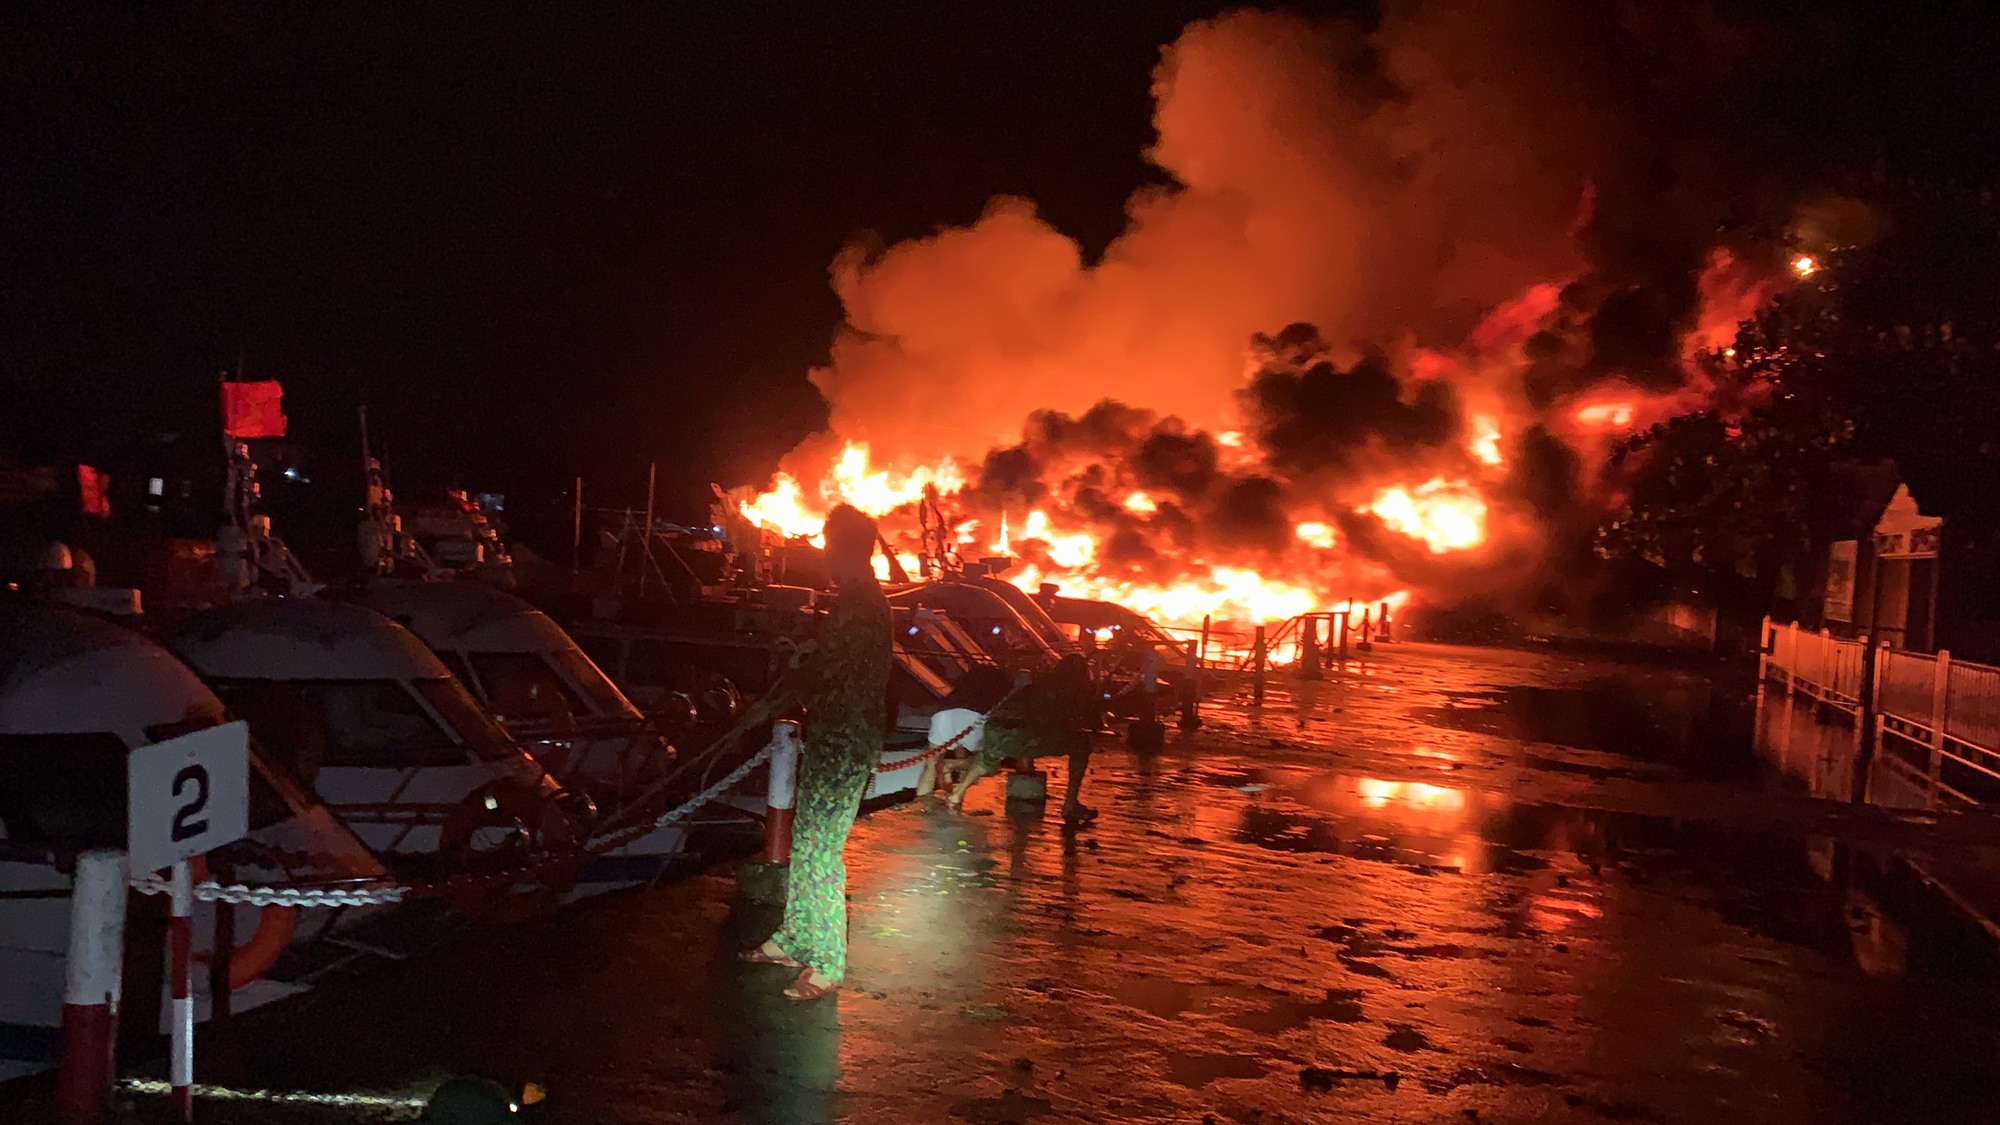 Quảng Nam: Hình ảnh 8 tàu du lịch bốc cháy dữ dội ở Cửa Đại - Ảnh 1.